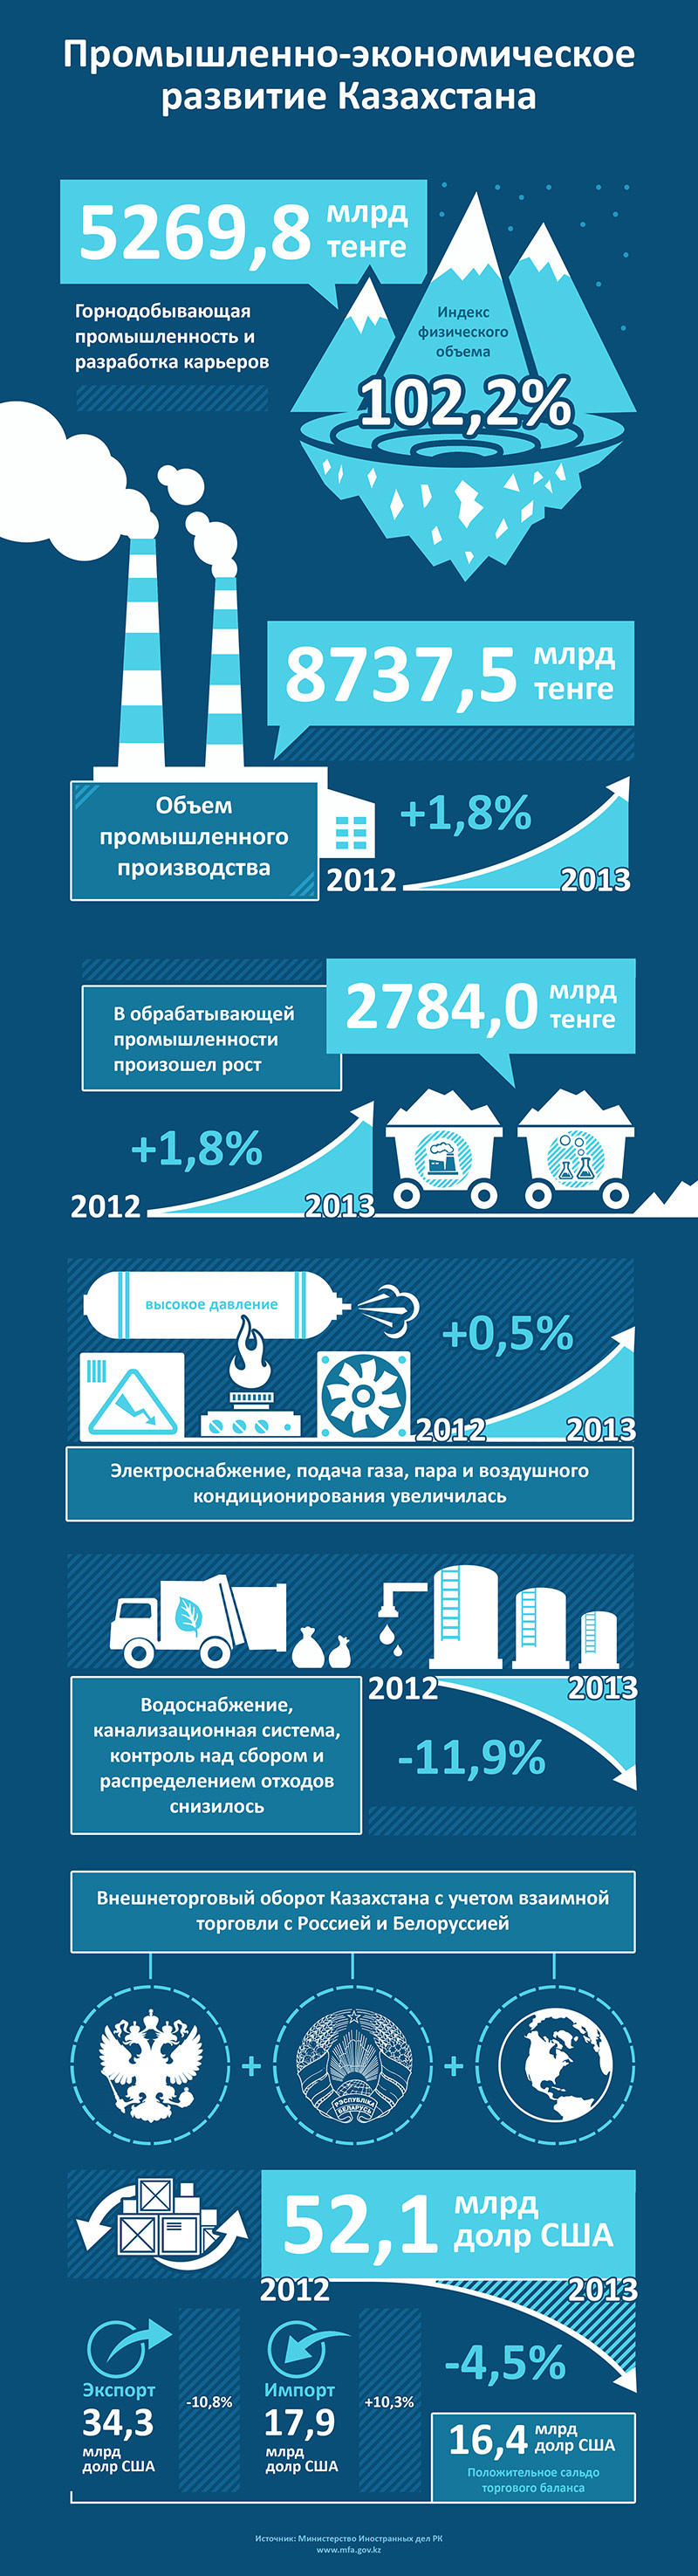 Промышленное развитие Казахстана